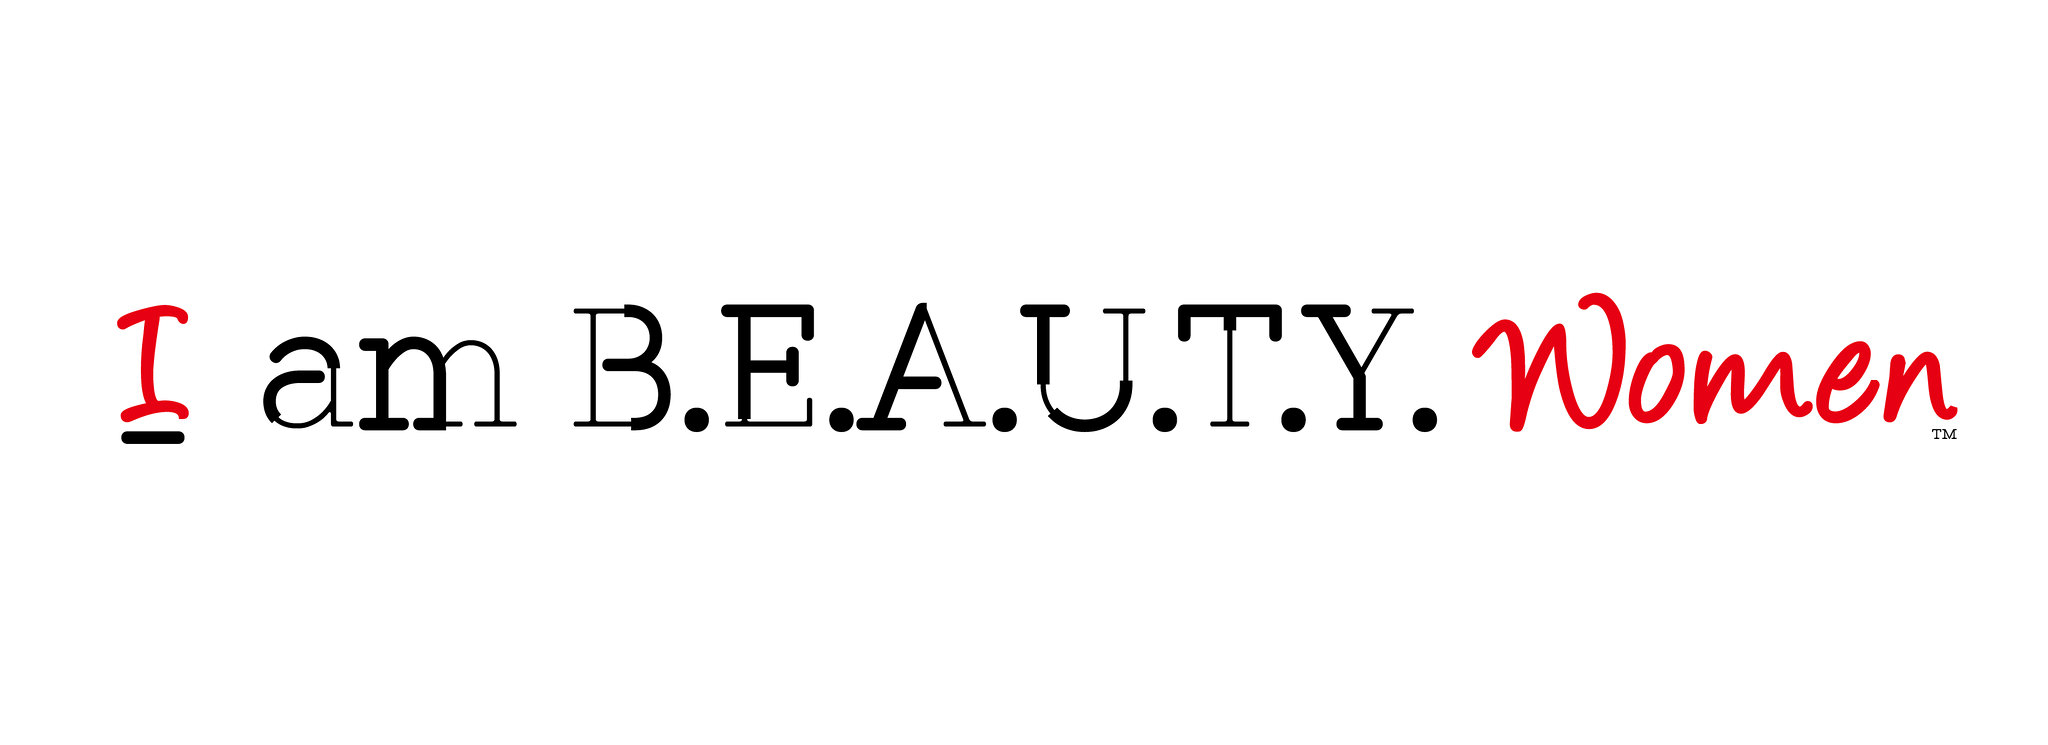 I am BEAUTY women's logo